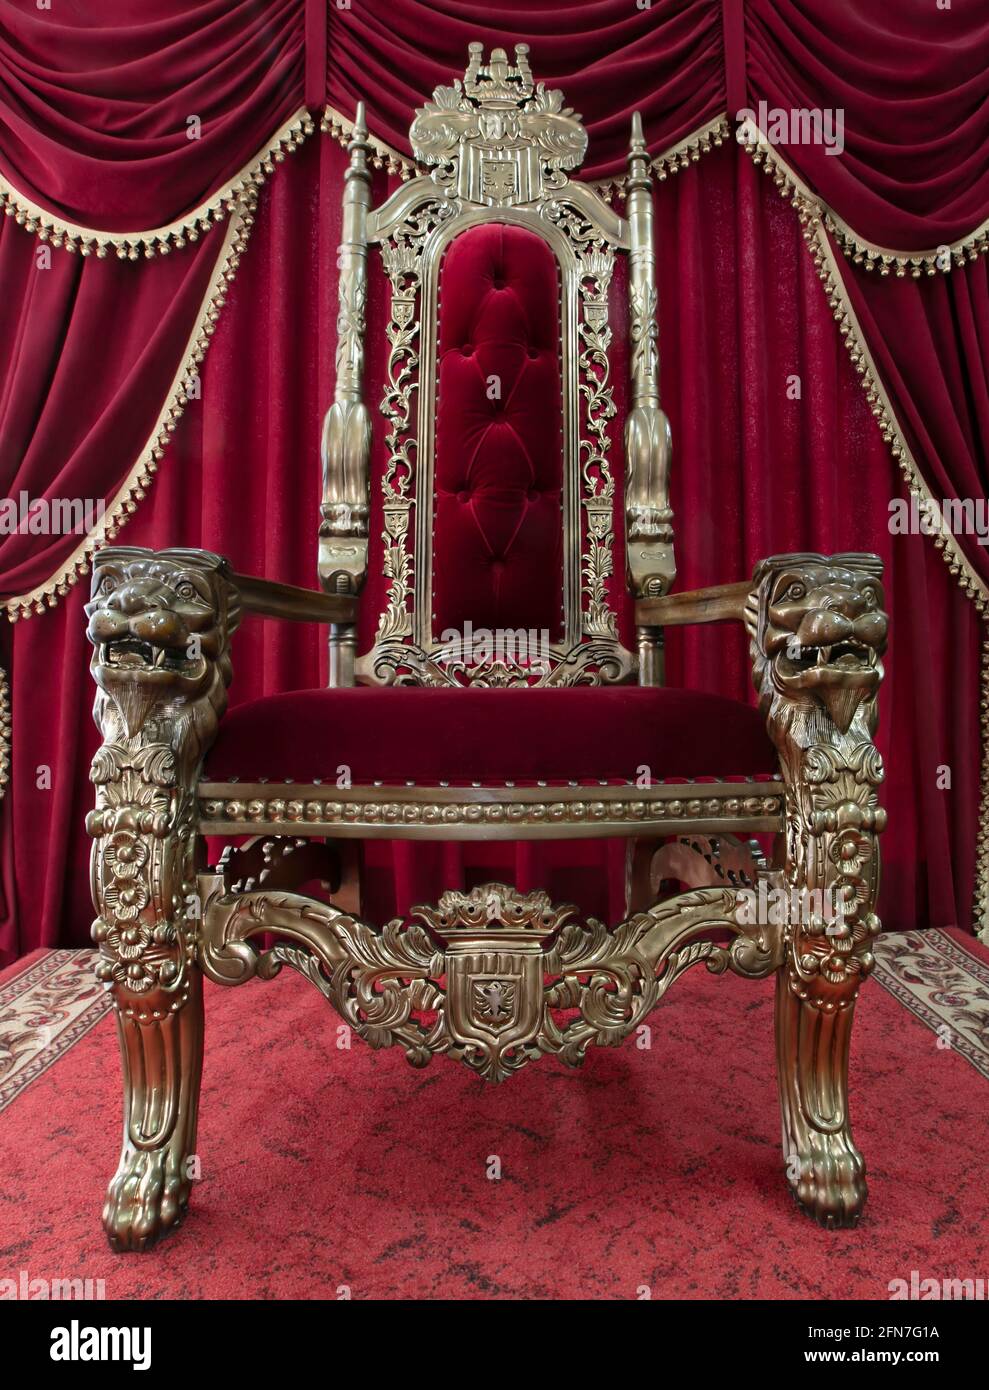 Chaise royal rouge sur fond de rideaux rouges. Place pour le roi. Discours  du Trône Photo Stock - Alamy